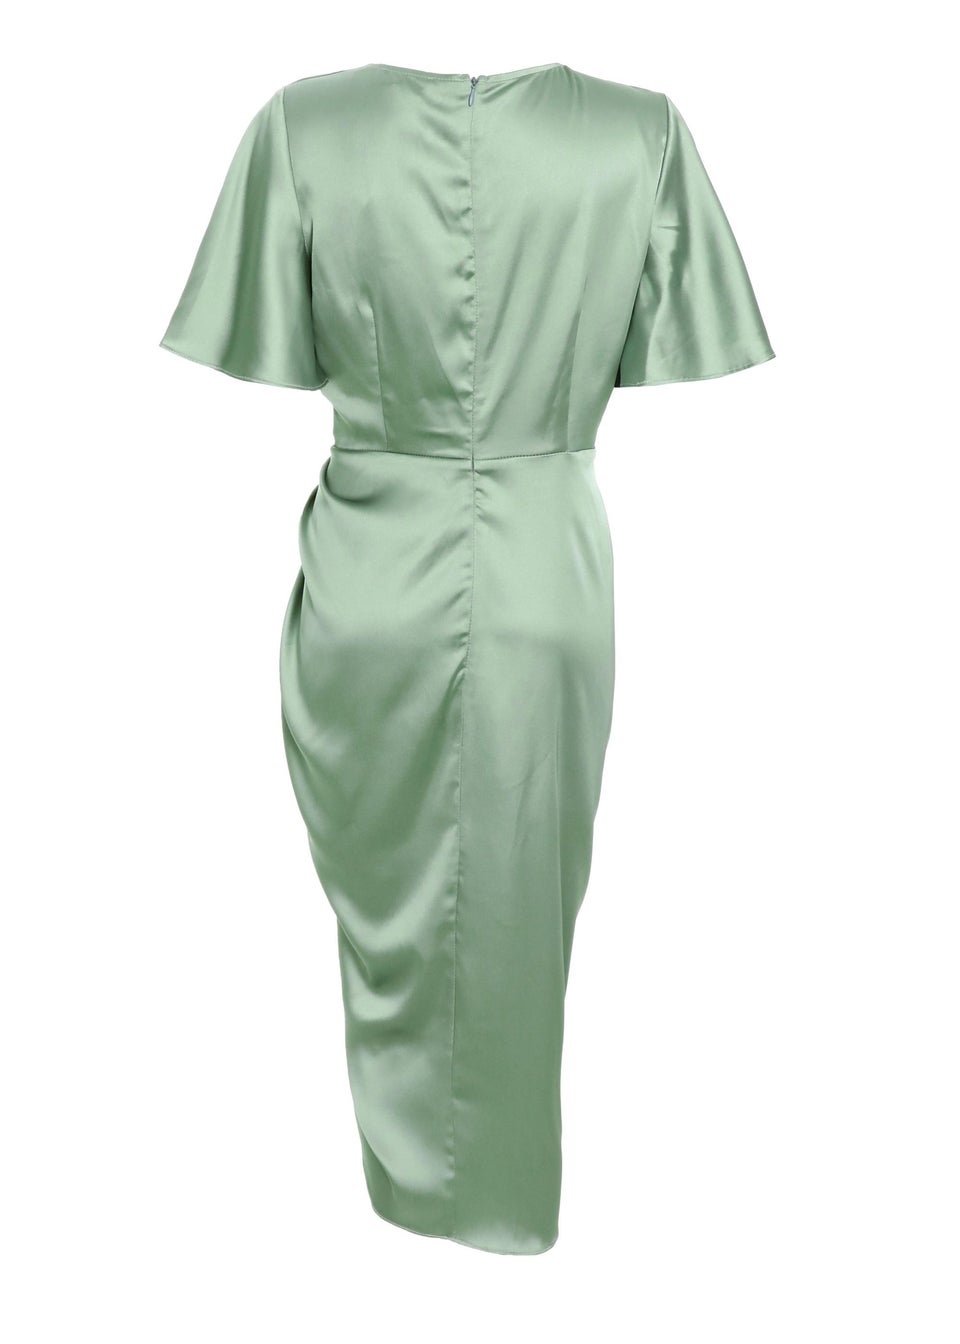 Quiz Green Satin Ruched Wrap Midi Dress